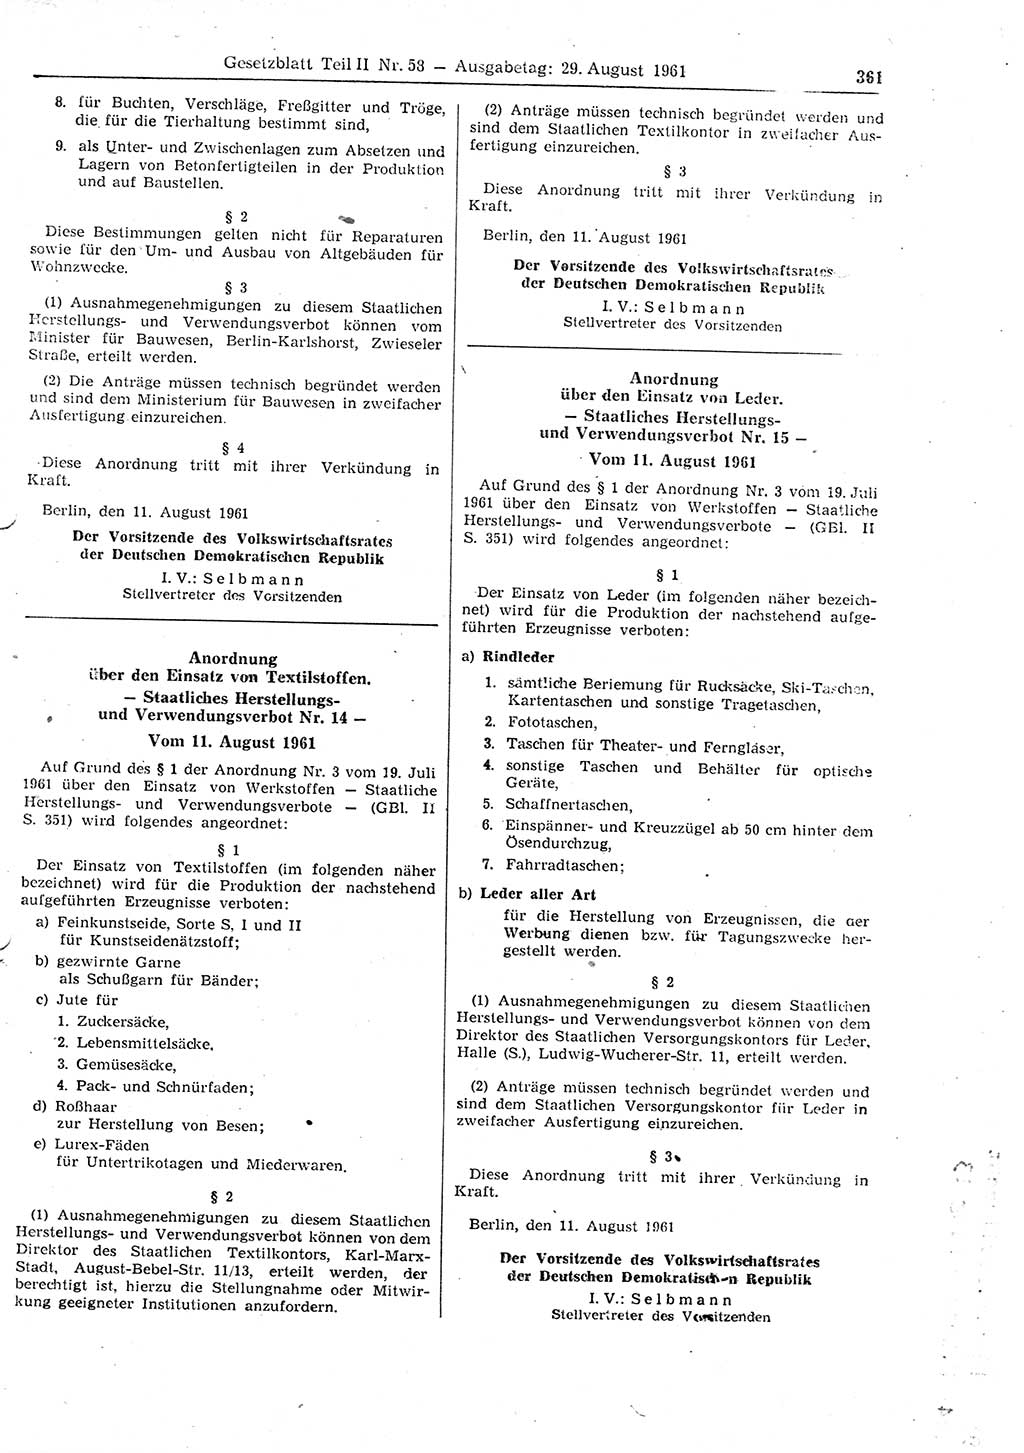 Gesetzblatt (GBl.) der Deutschen Demokratischen Republik (DDR) Teil ⅠⅠ 1961, Seite 361 (GBl. DDR ⅠⅠ 1961, S. 361)